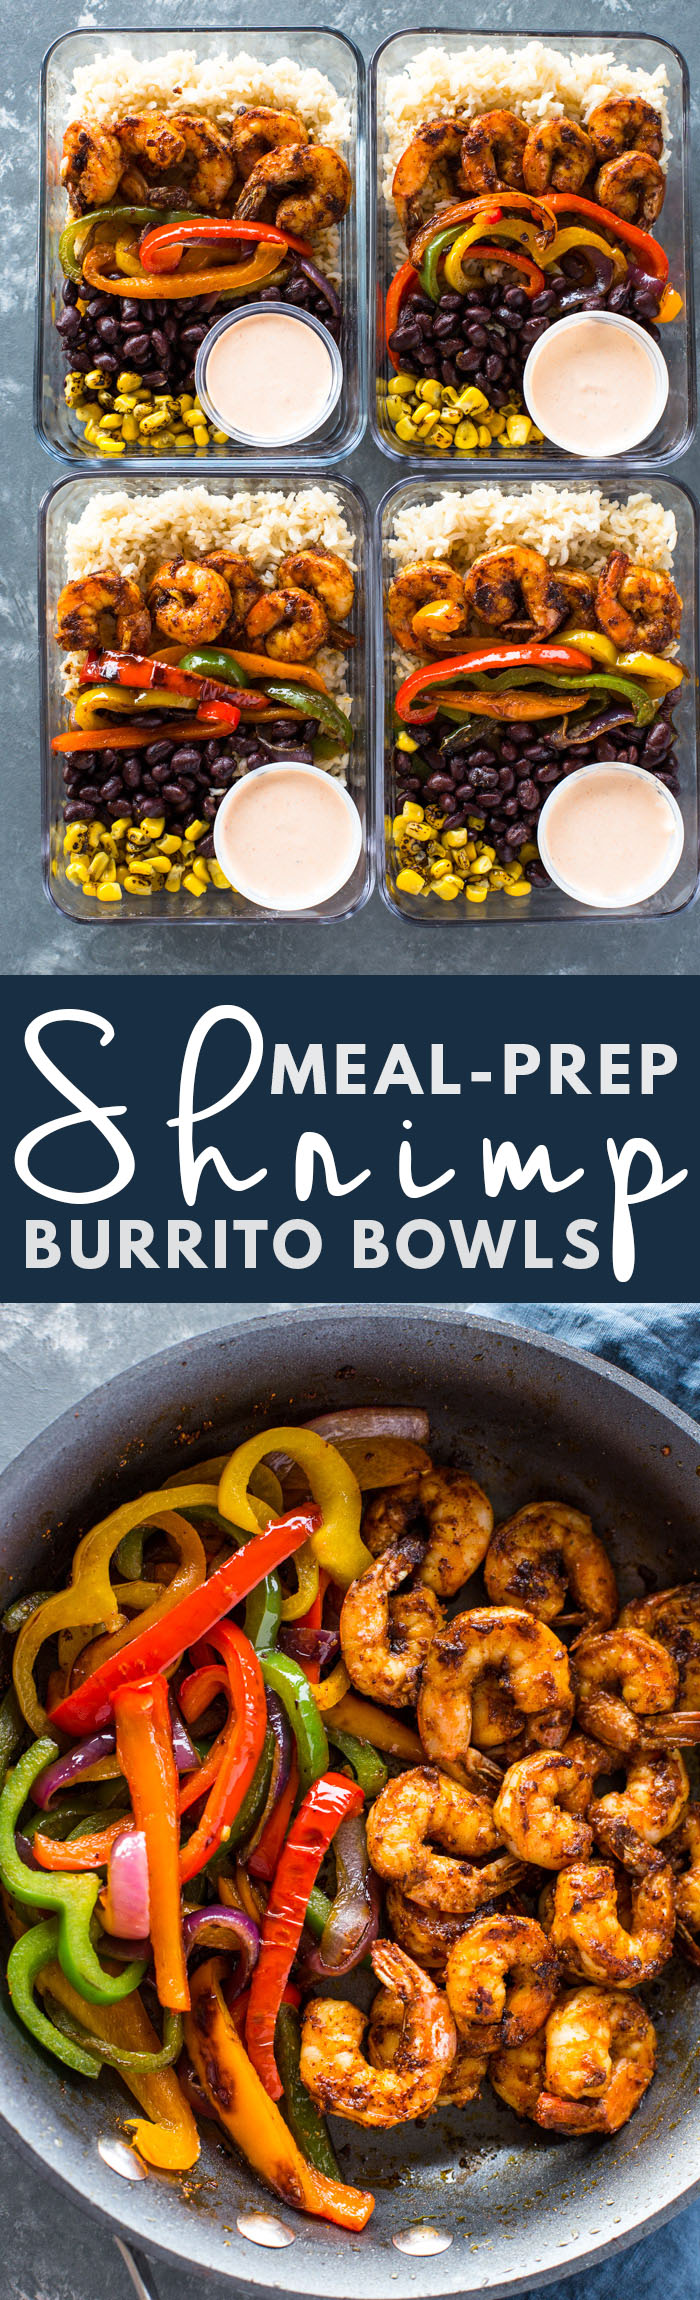 Meal-Prep Shrimp Burrito Bowls 